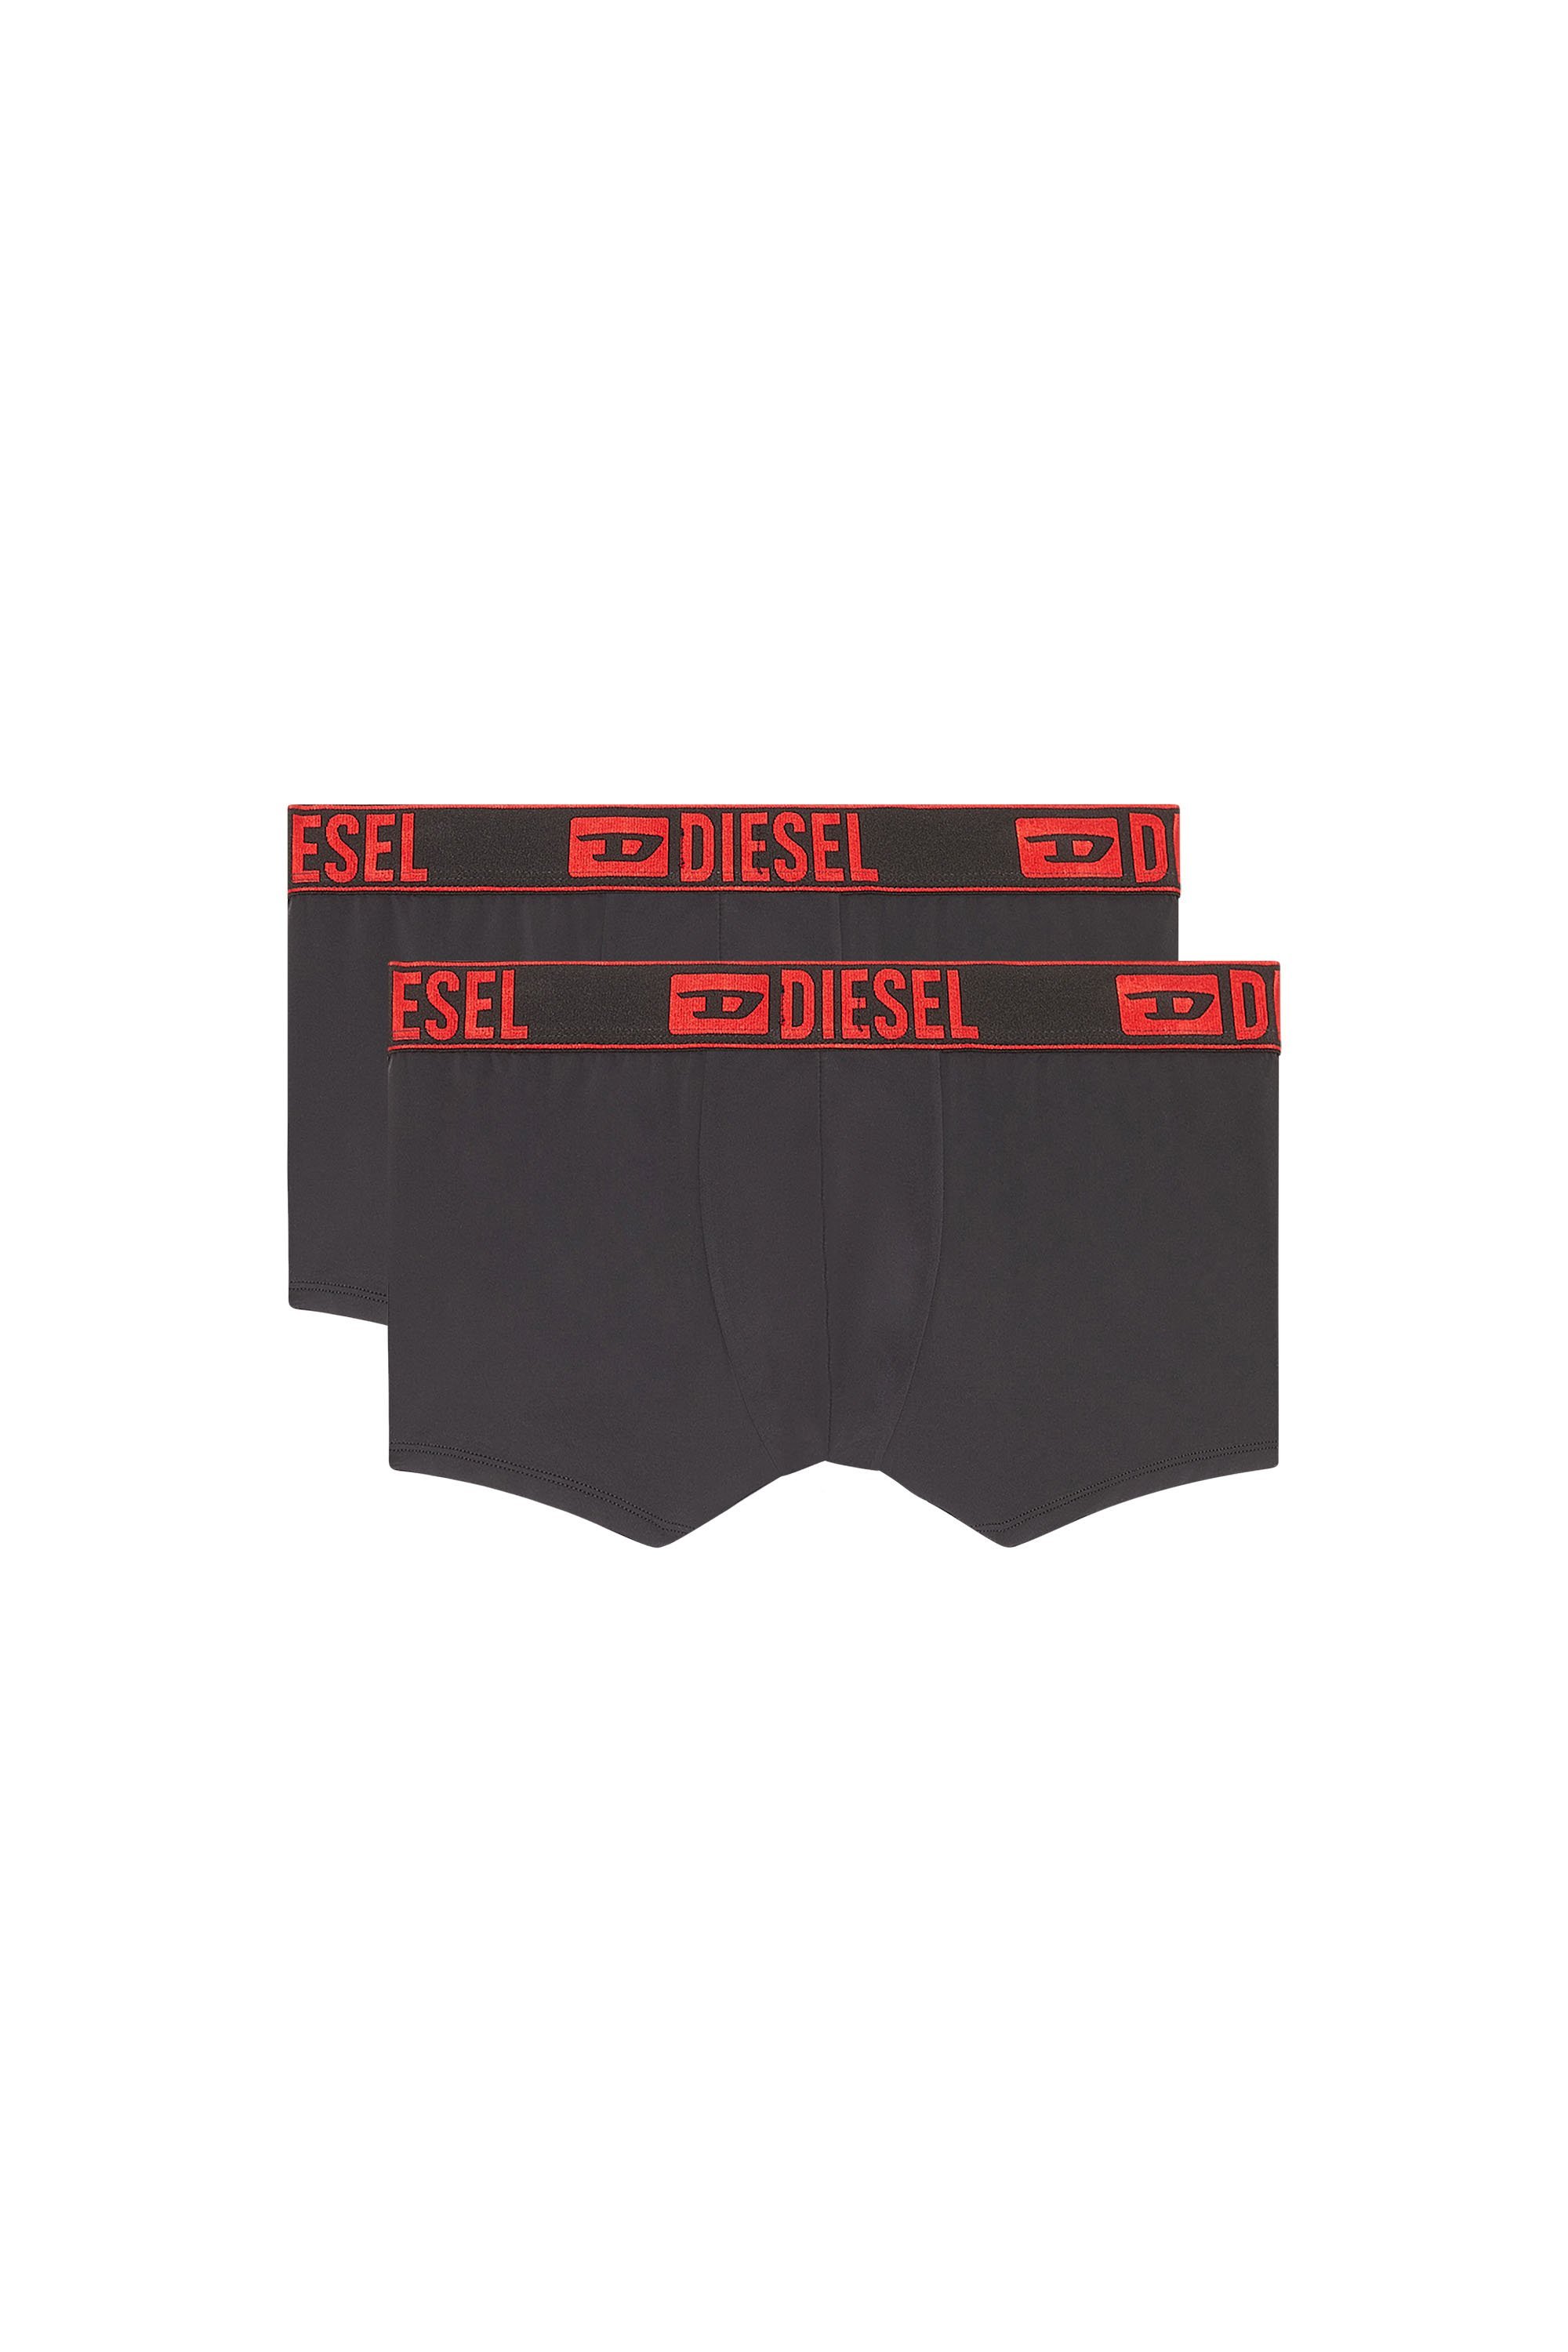 ディーゼル ルームウェア メンズ DIESEL メンズ アンダーウェア ボクサーパンツ 2枚セット ディーゼル インナー・ルームウェア ボクサーパンツ・トランクス ブラック【送料無料】